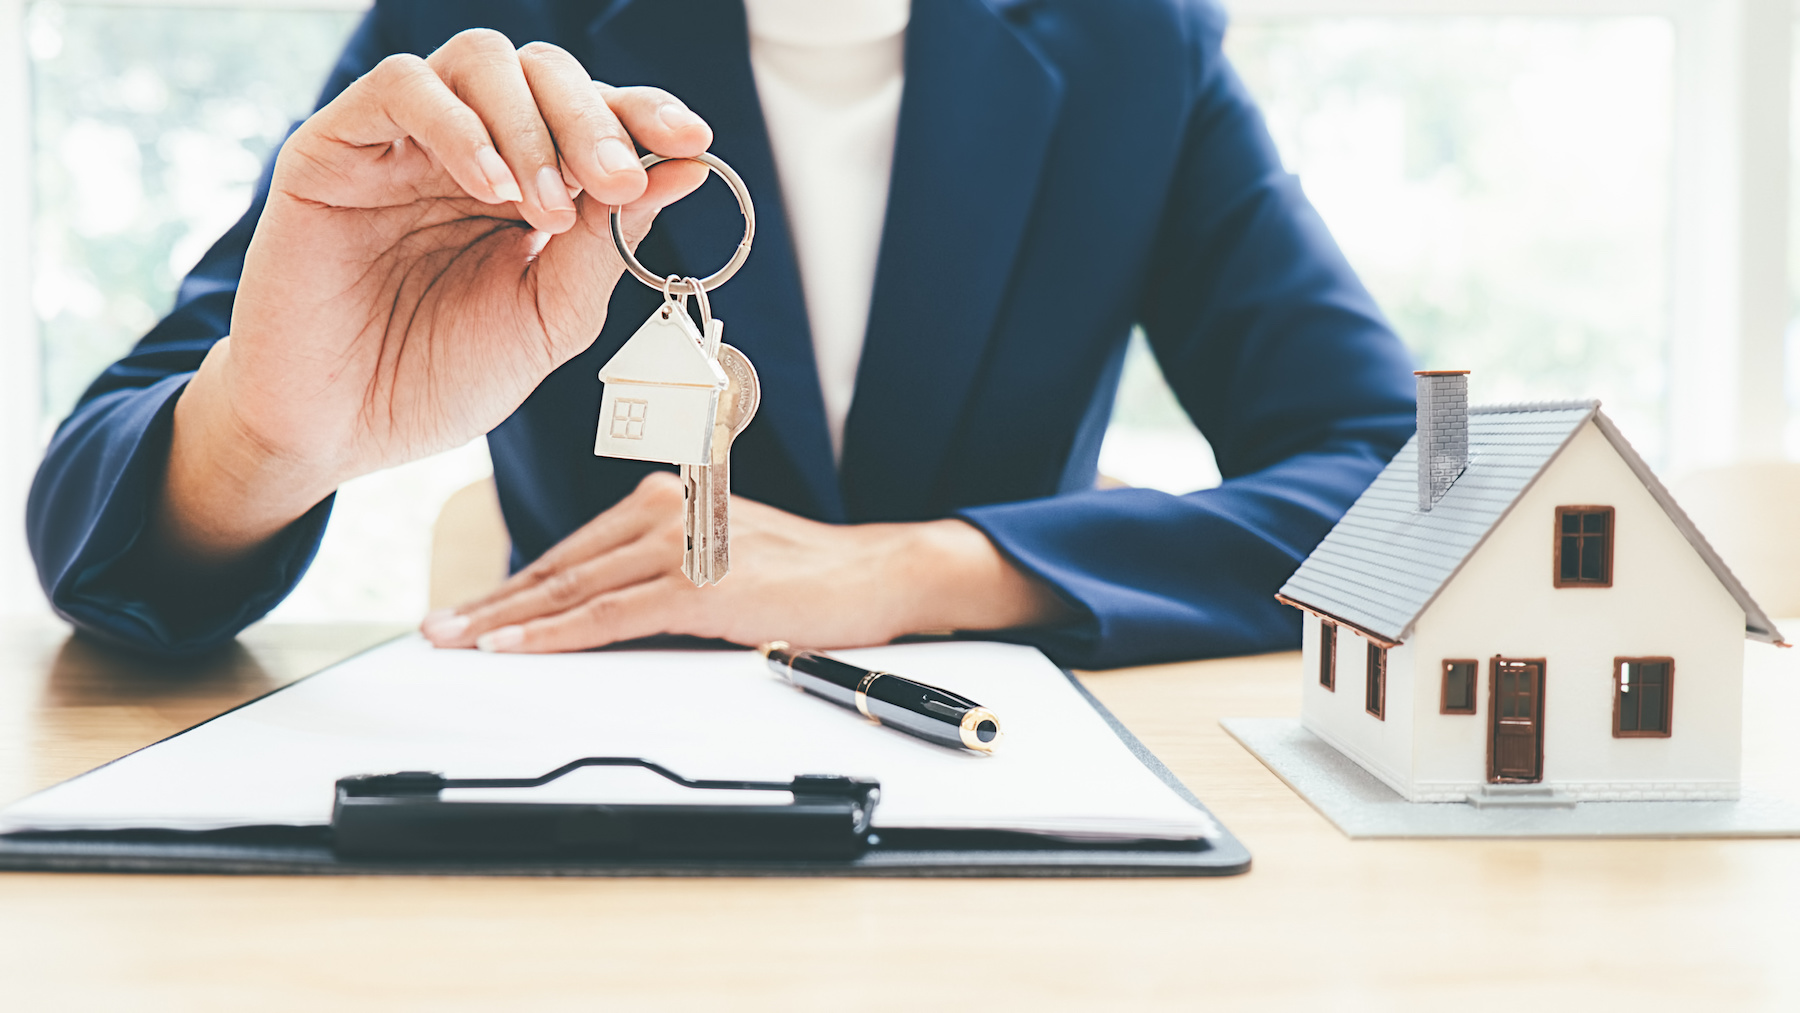 Immobilien kaufen – Tipps von Experten